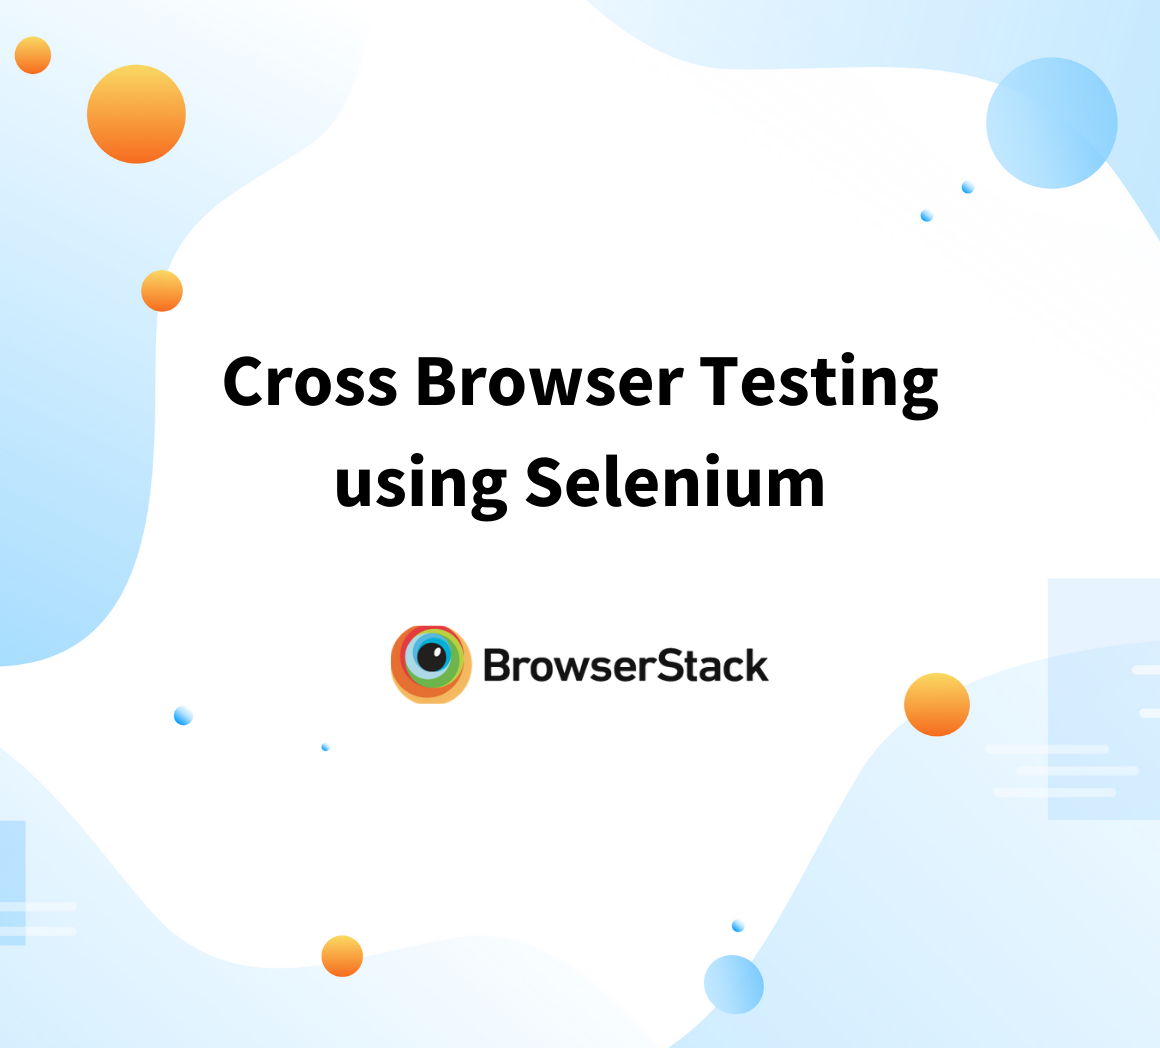 Cross Browser Testing using Selenium